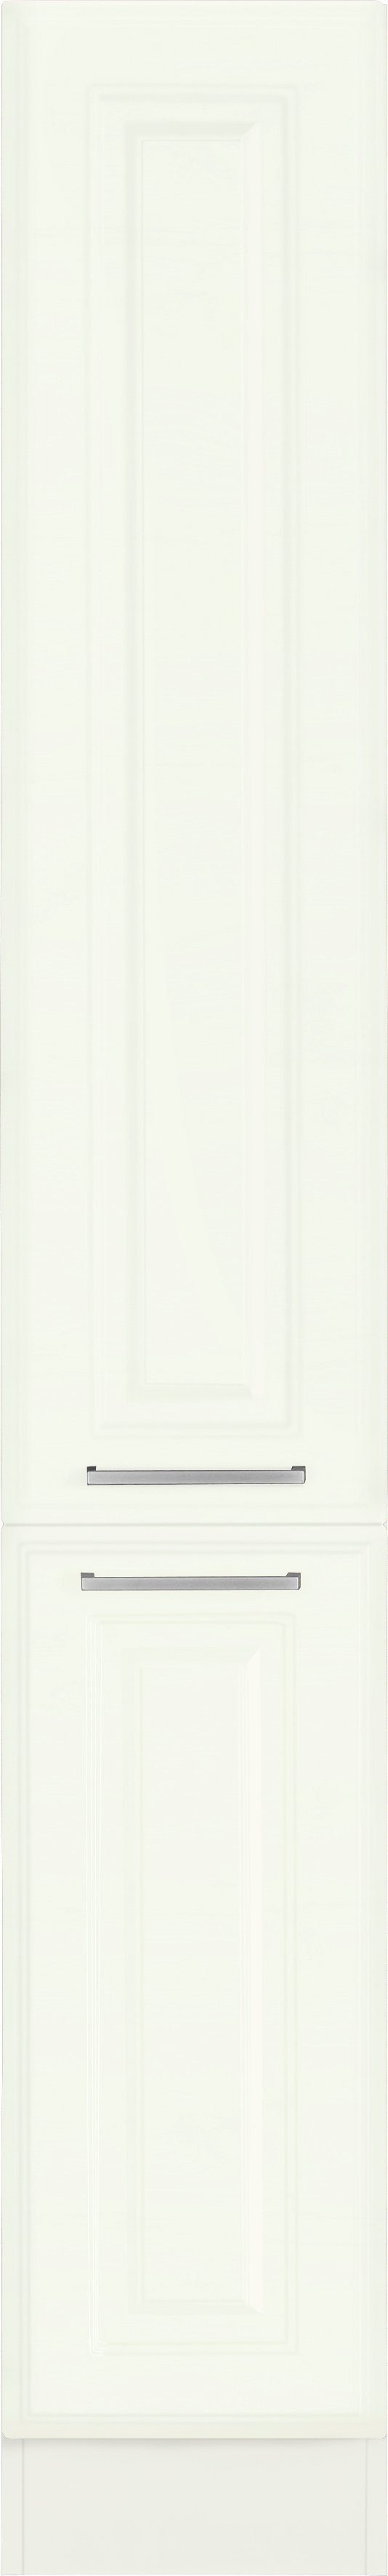 HELD MÖBEL Apothekerschrank Stockholm, Breite 30 cm weiß/weiß hoch, 200 cm viel MDF-Fronten, hochwertige Stauraum